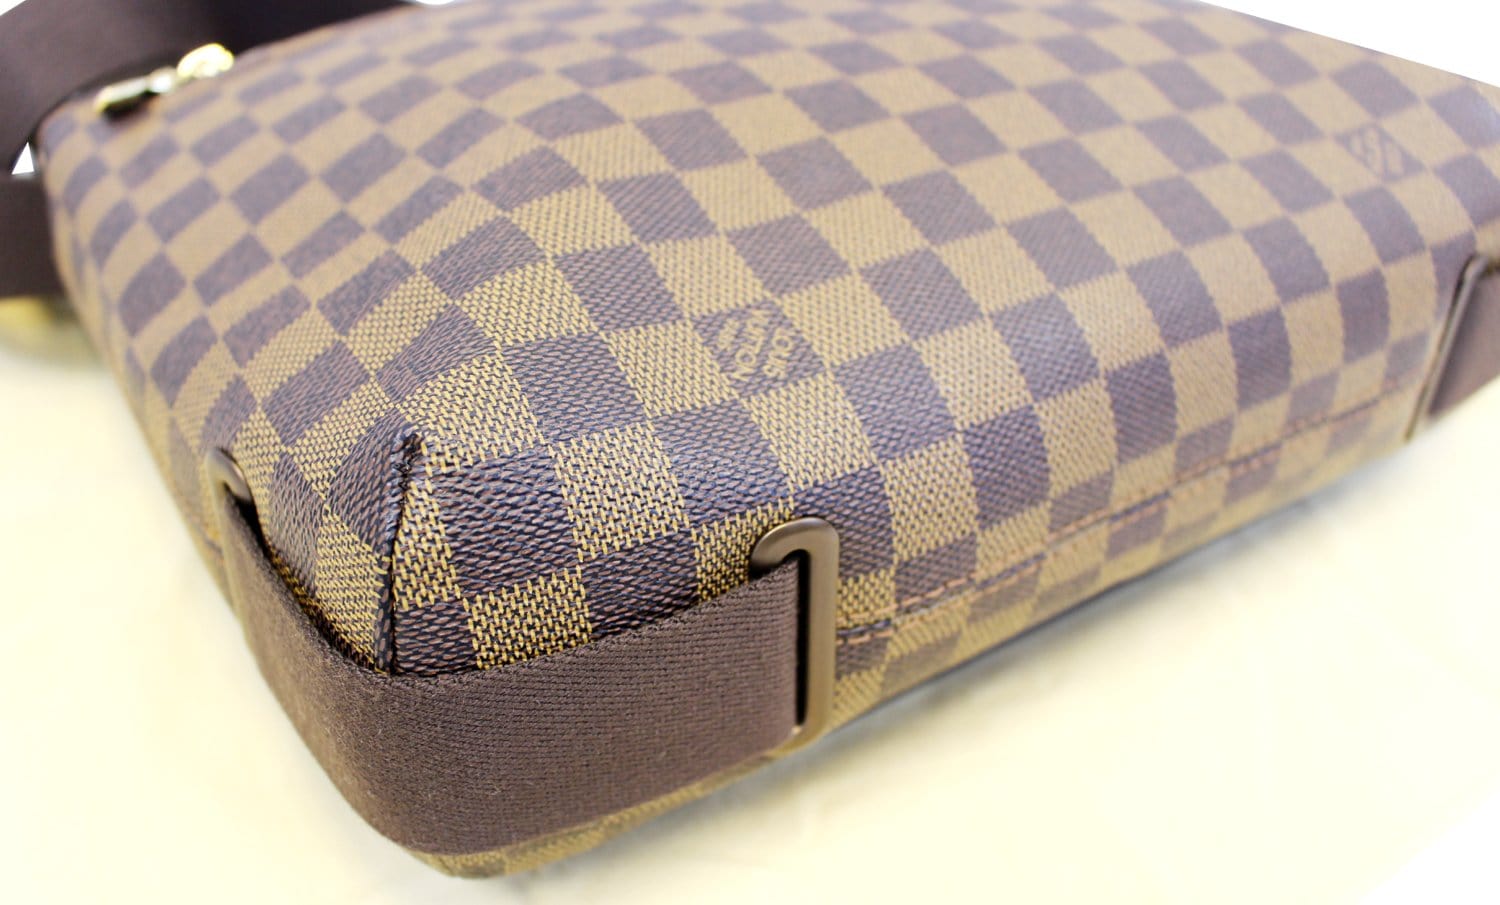 Louis Vuitton Brooklyn MM Damier Ebene Messenger Bag Discontinued